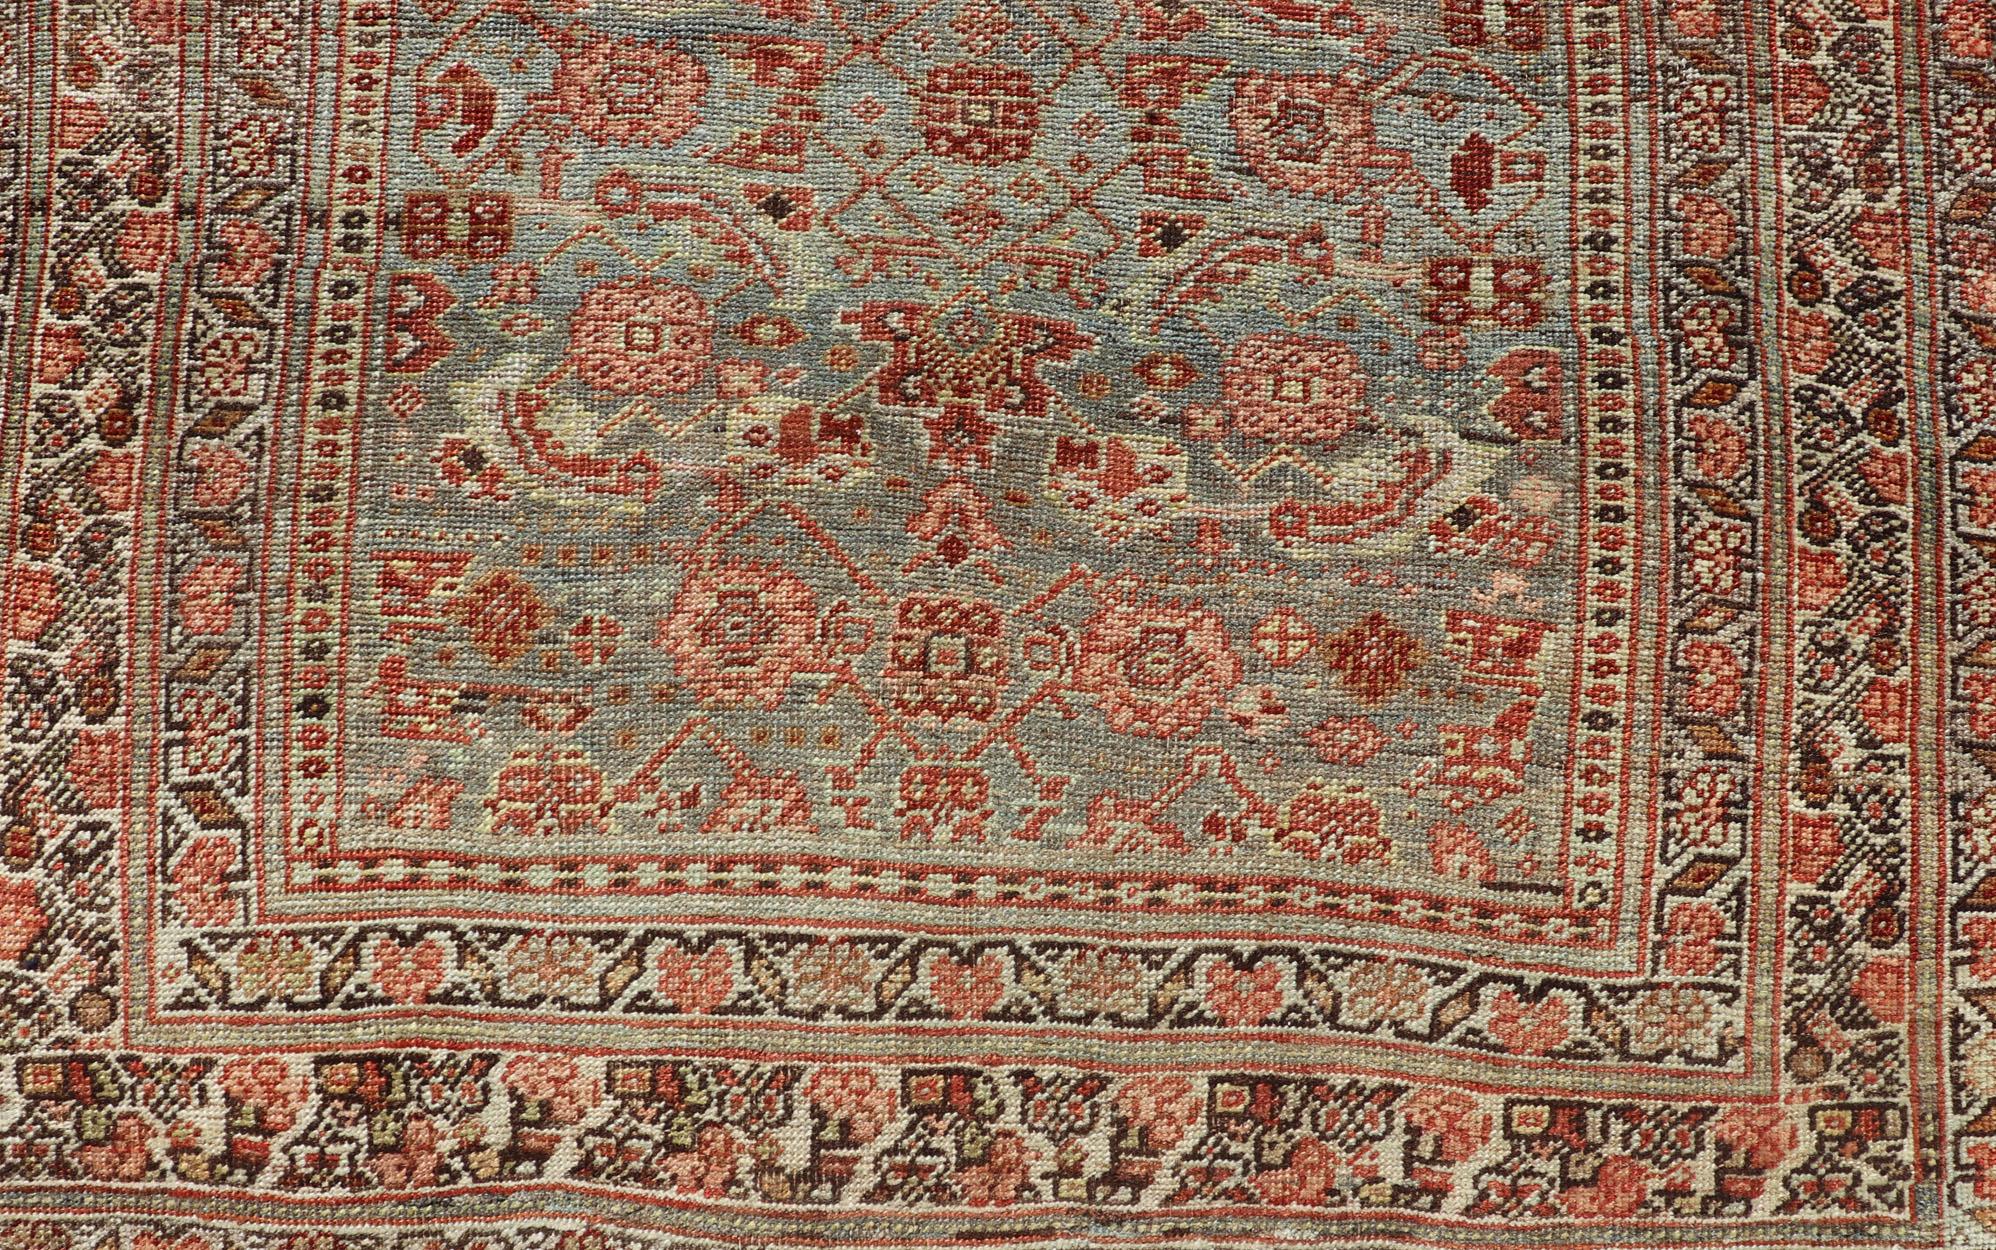 Antique Persian Bidjar Runner, tapis EMB-9575-P13088, pays d'origine / type : Perse / Bidjar, vers le début du 20ème siècle.

Mesures : 3'10'' x 18'0''

Ce superbe tapis ancien Bidjar (vers 1900) présente un dessin sur toute sa surface avec des